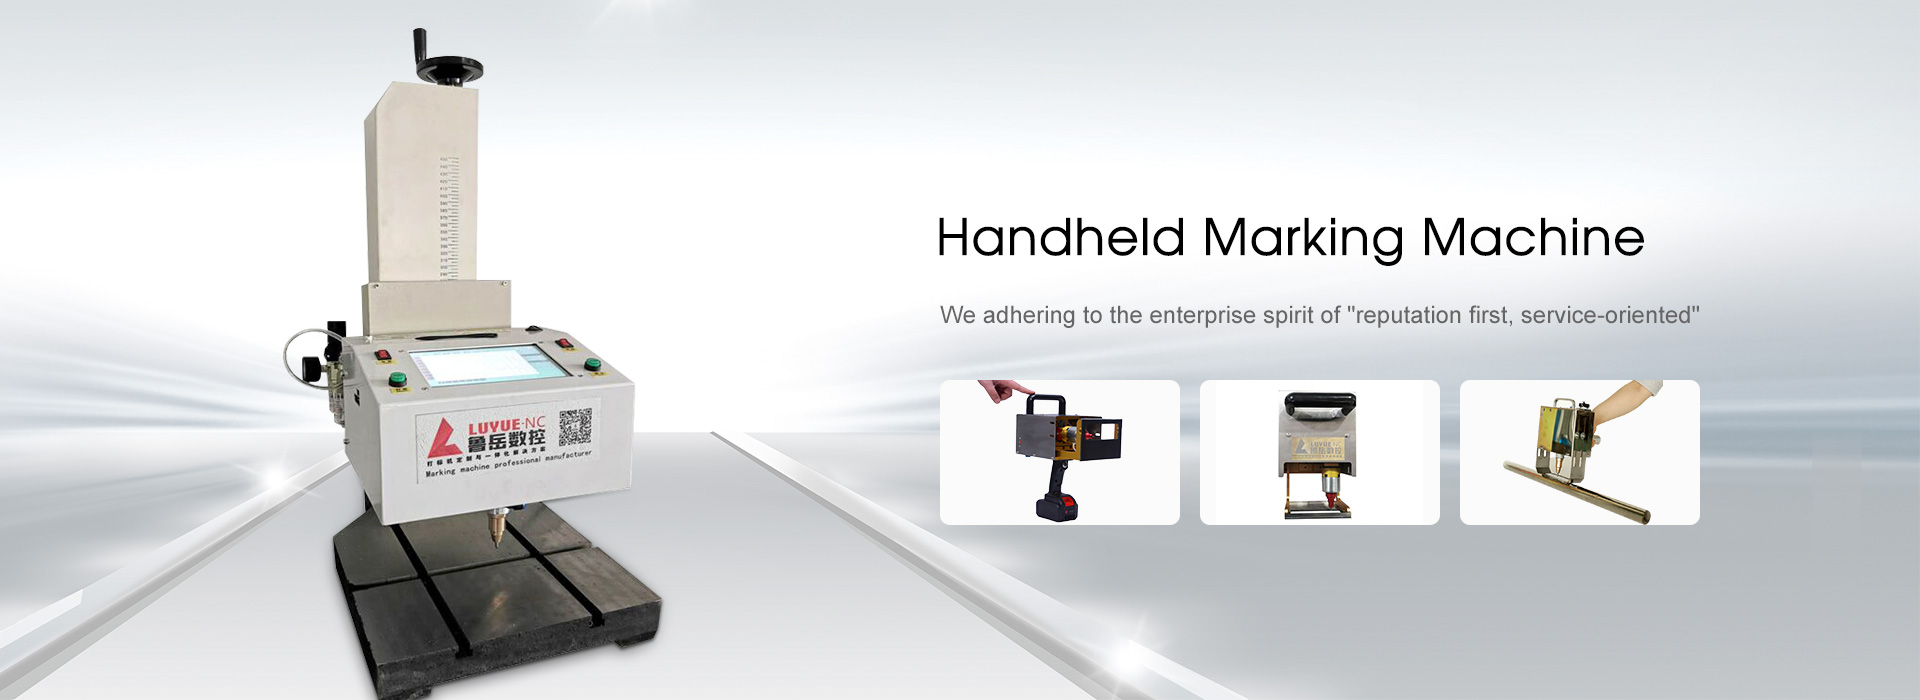 Handheld Marking Machine Manufacturers